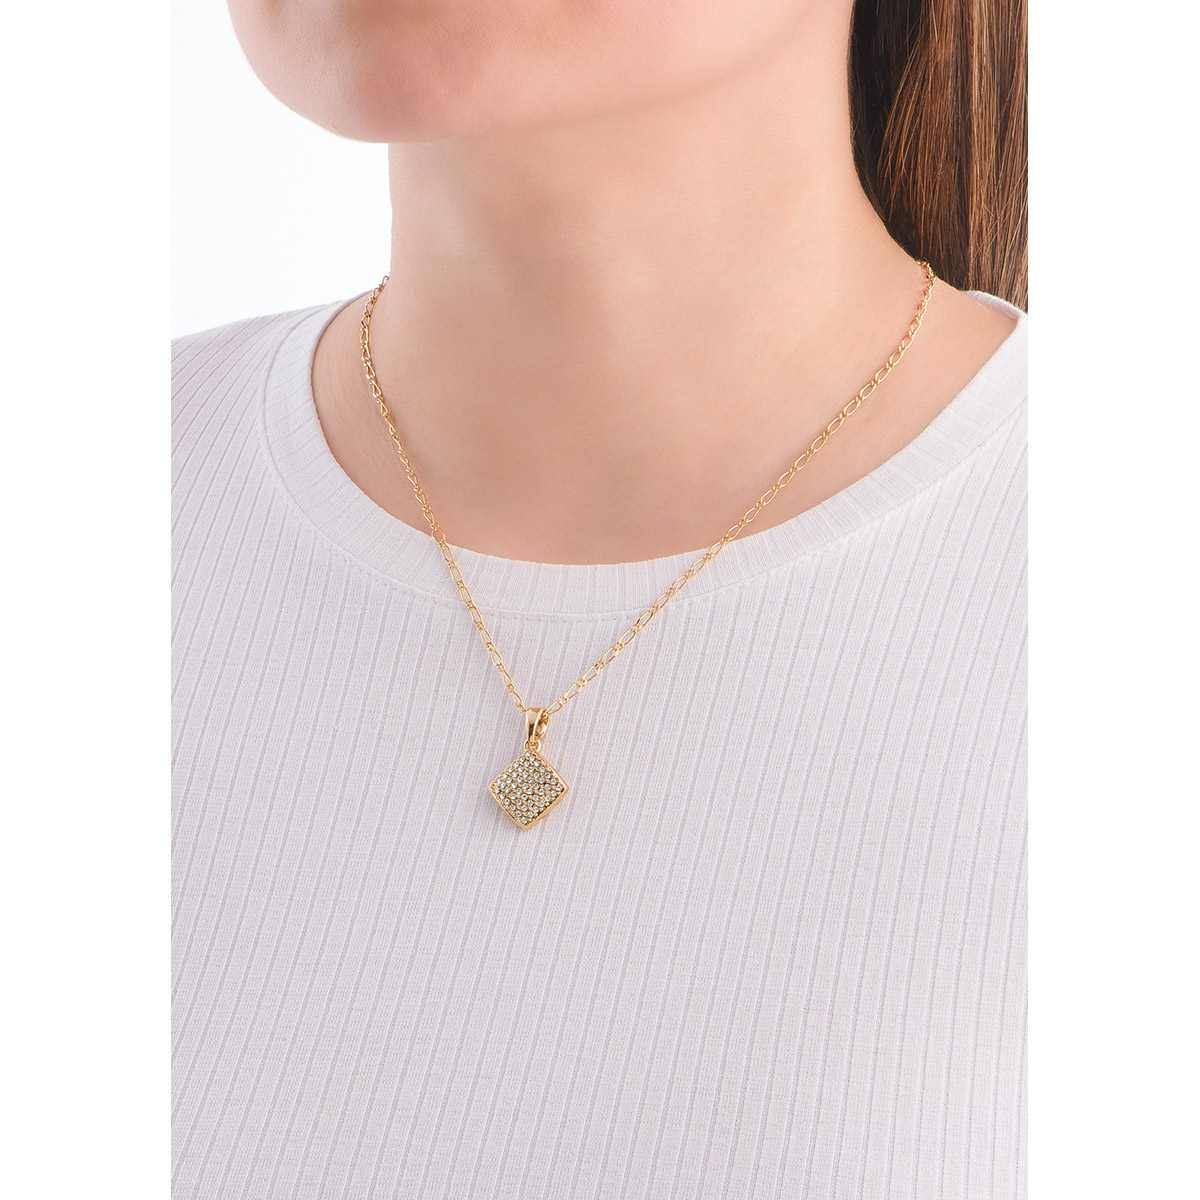 La distinción y elegancia caracterizan a este collar dorado en forma de rombo, con piedras en tono cristal. 
-Collar con dije
-42 cm + 10 ext.
-Oro 18K